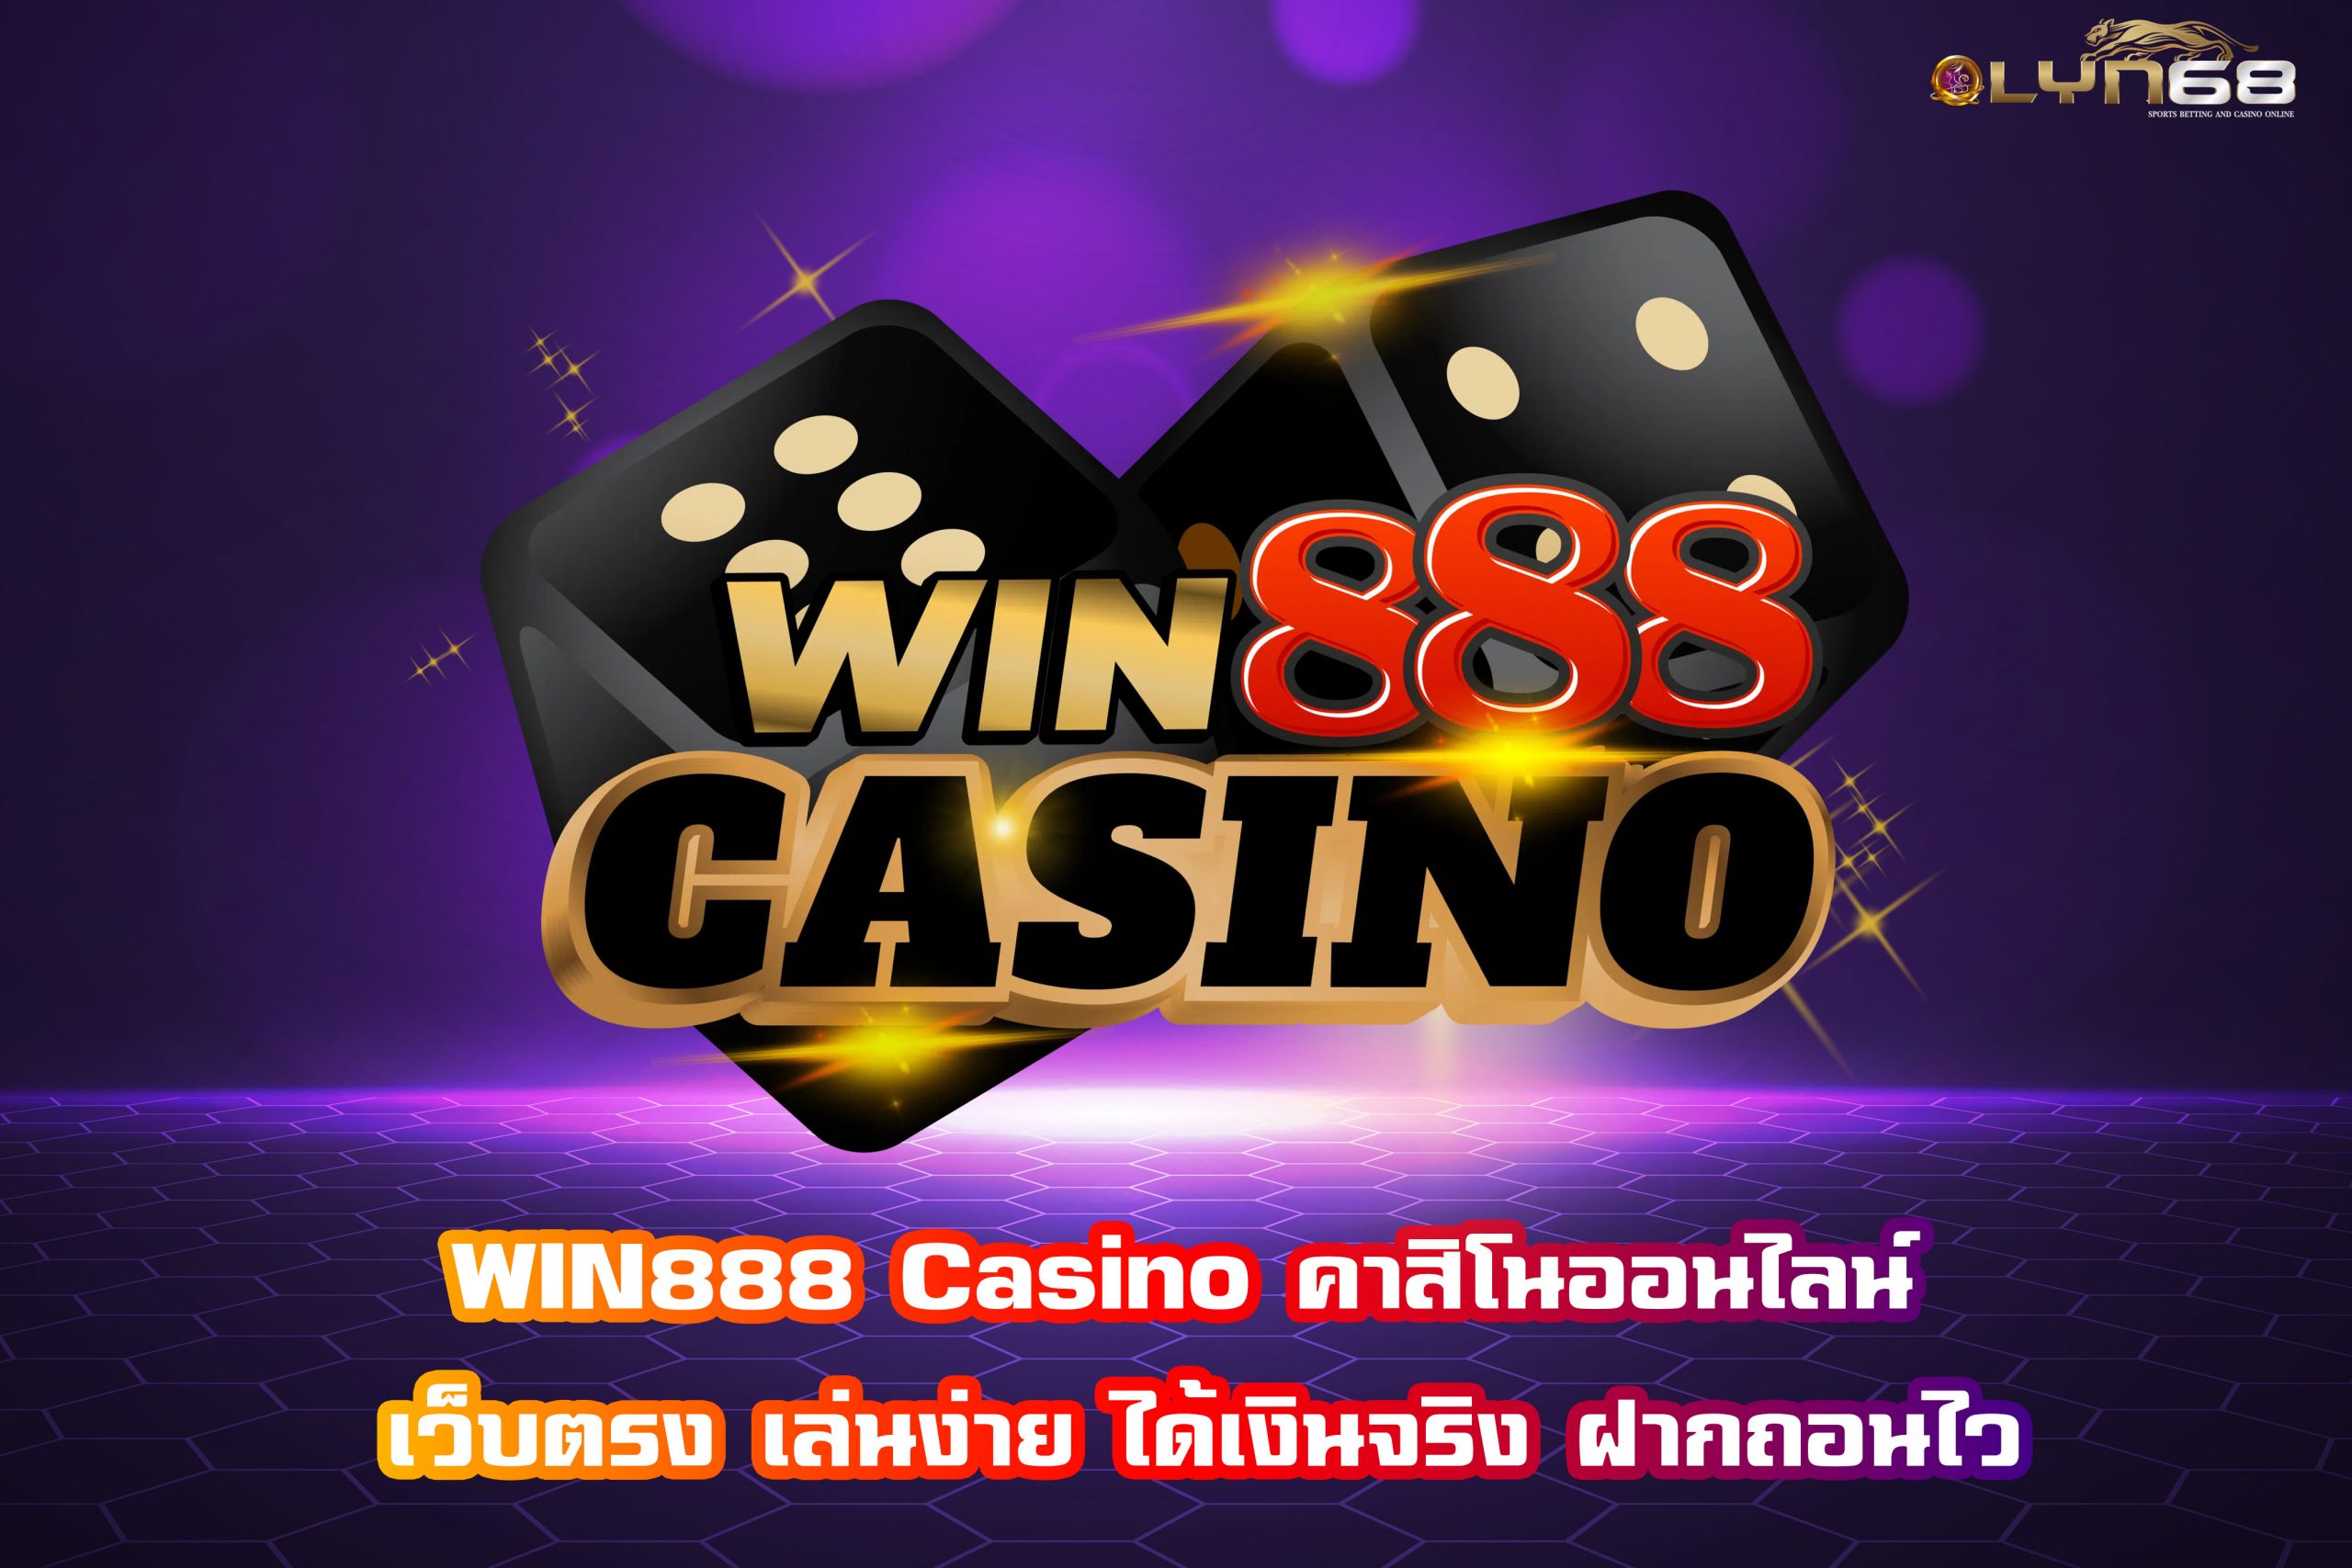 WIN888 Casino คาสิโนออนไลน์ เว็บตรง เล่นง่าย ได้เงินจริง ฝากถอนไว